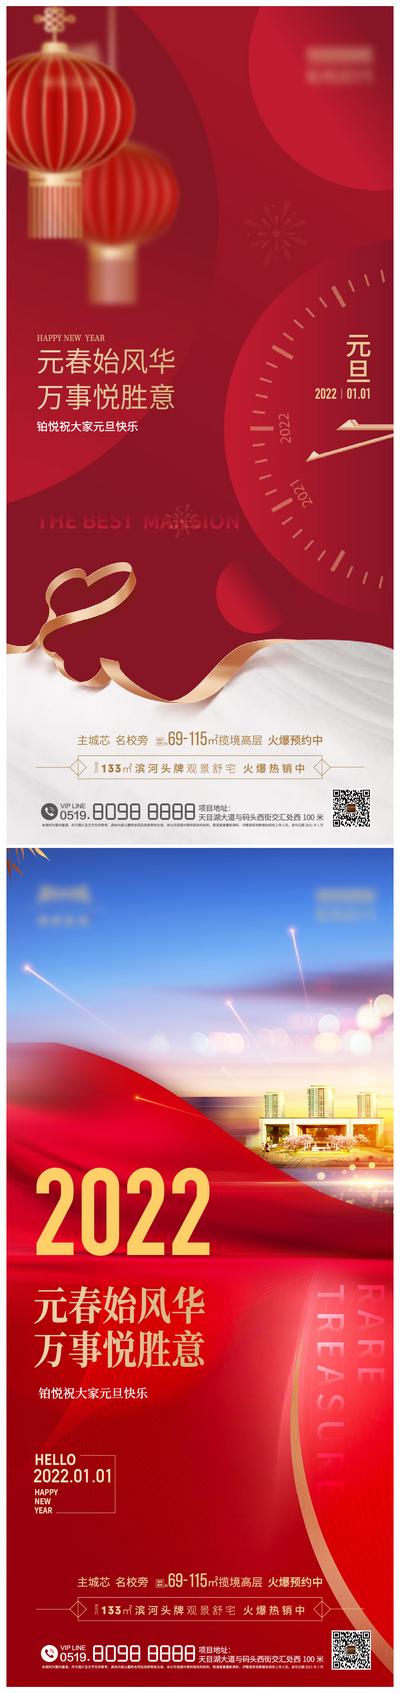 南门网 海报 地产 公历节日 元旦 2022 新年 灯笼 刷屏 系列